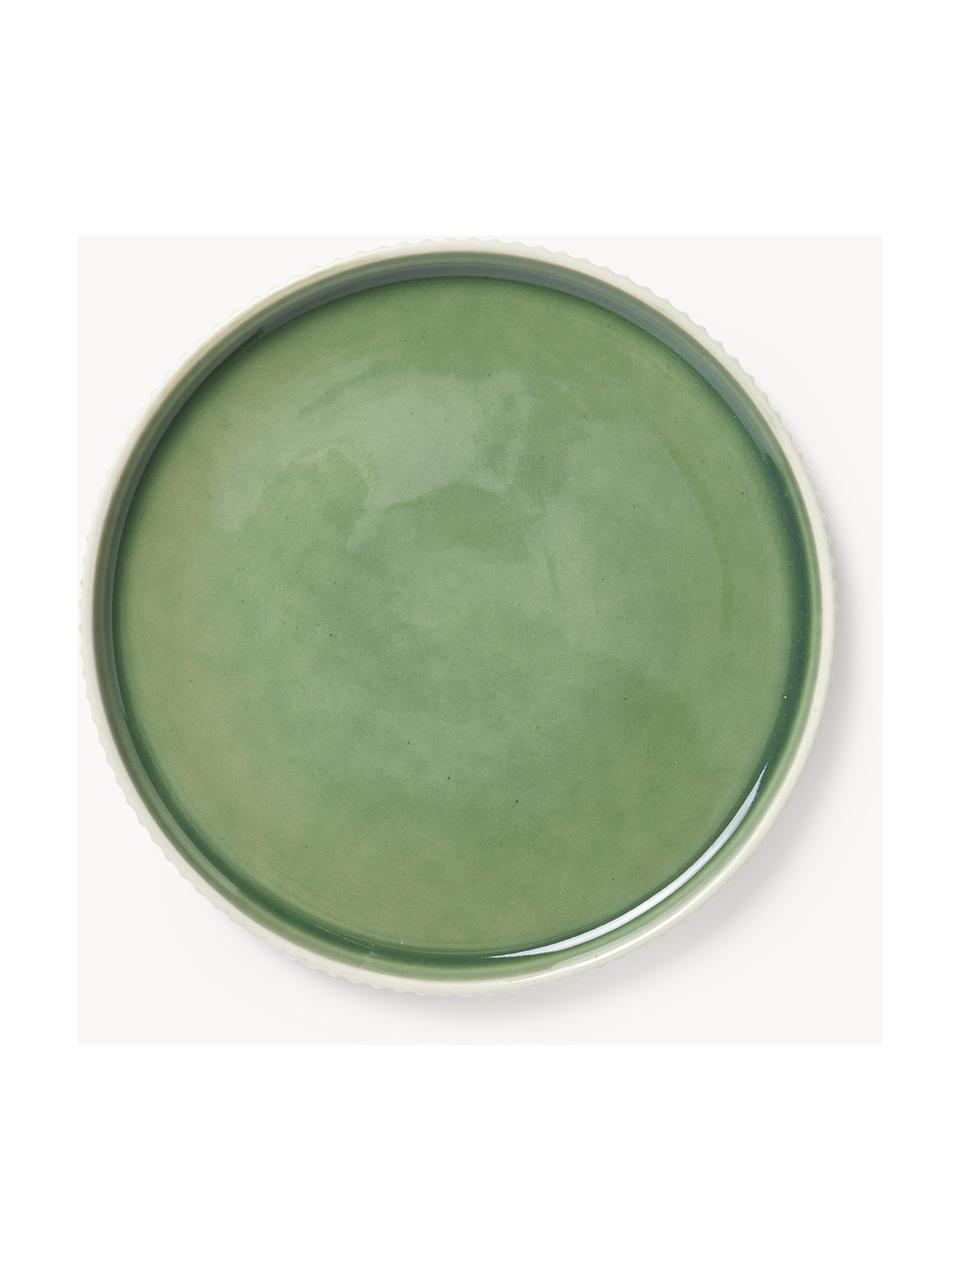 Piatti da colazione con struttura scanalata Bora 4 pz, Gres smaltato, Verde chiaro lucido, beige chiaro opaco, Ø 21 cm